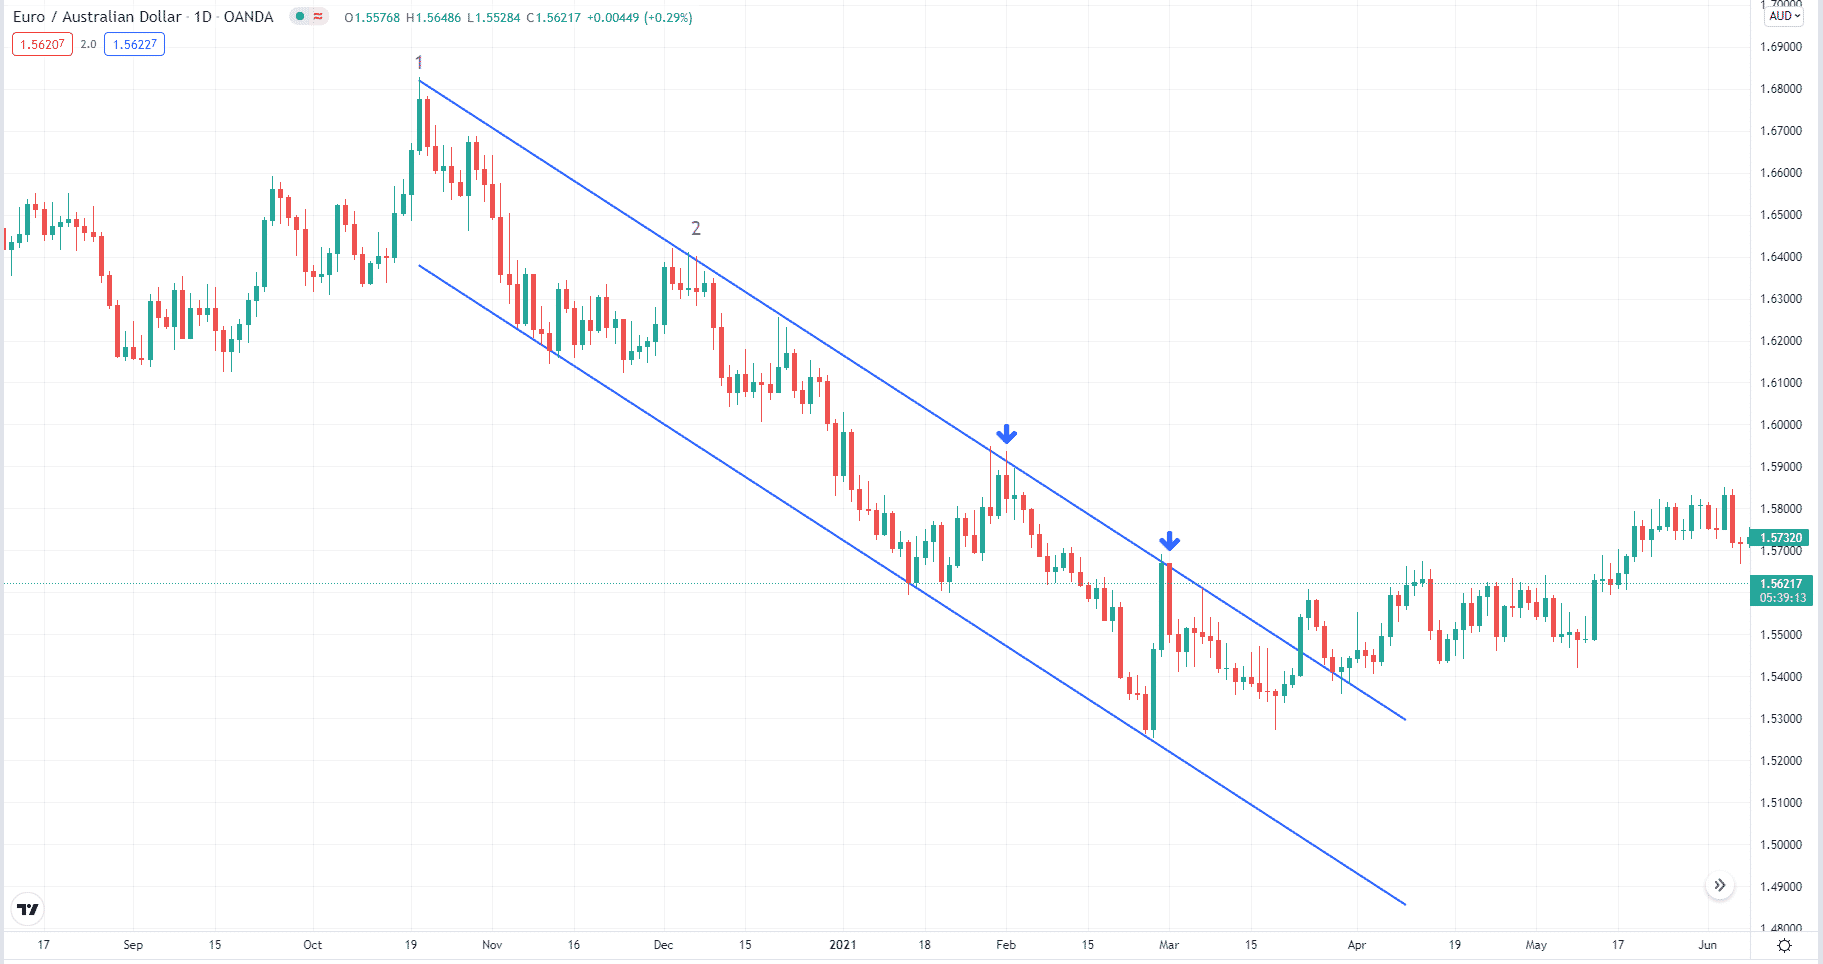 EUR/AUD descending channel